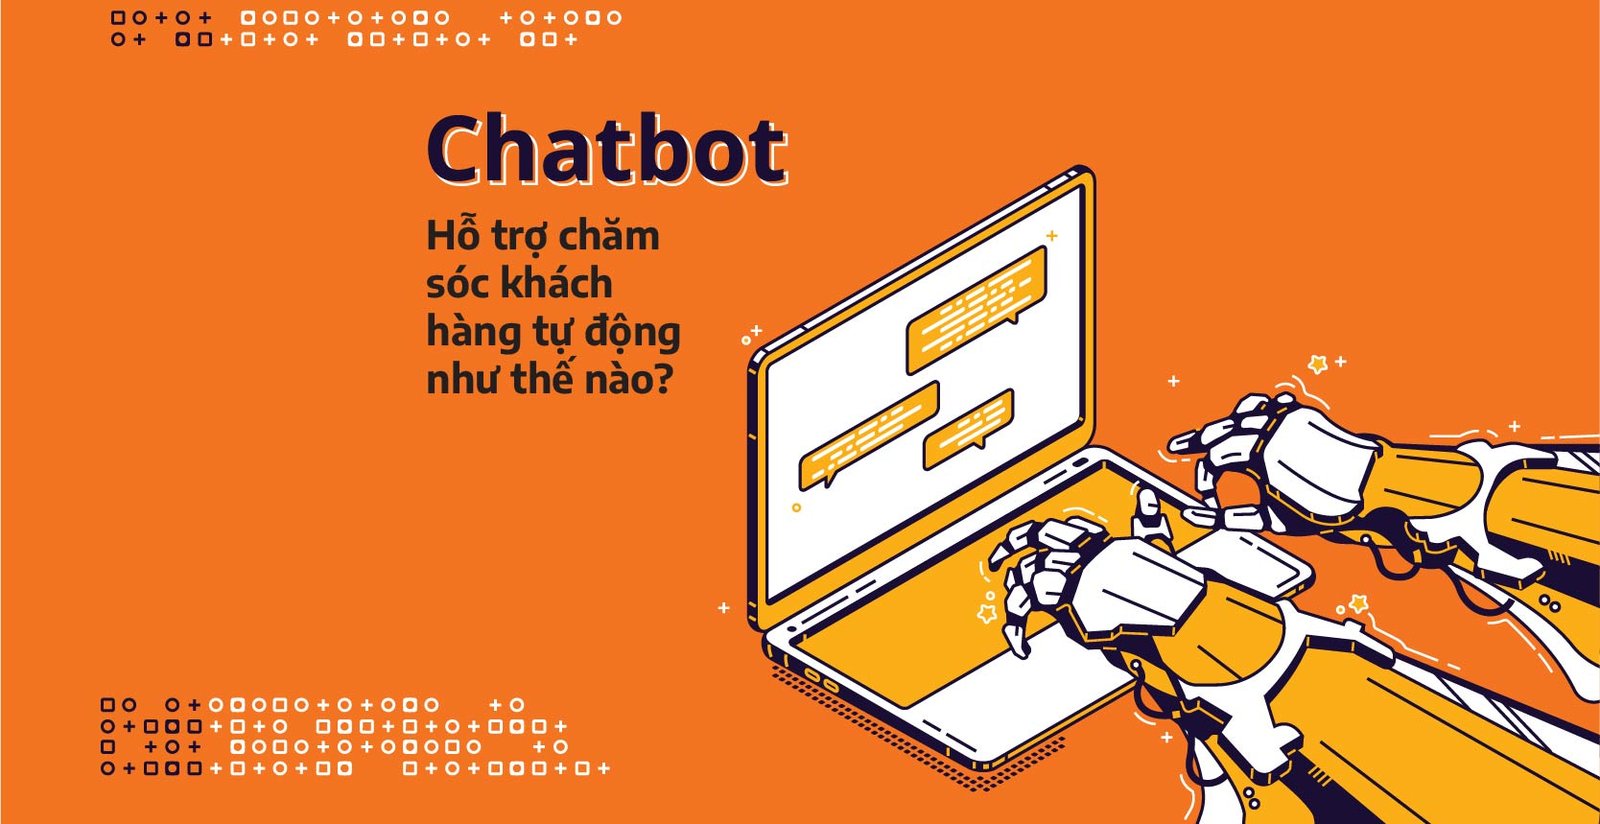 Chatbot hỗ trợ chăm sóc khách hàng tự động như thế nào?